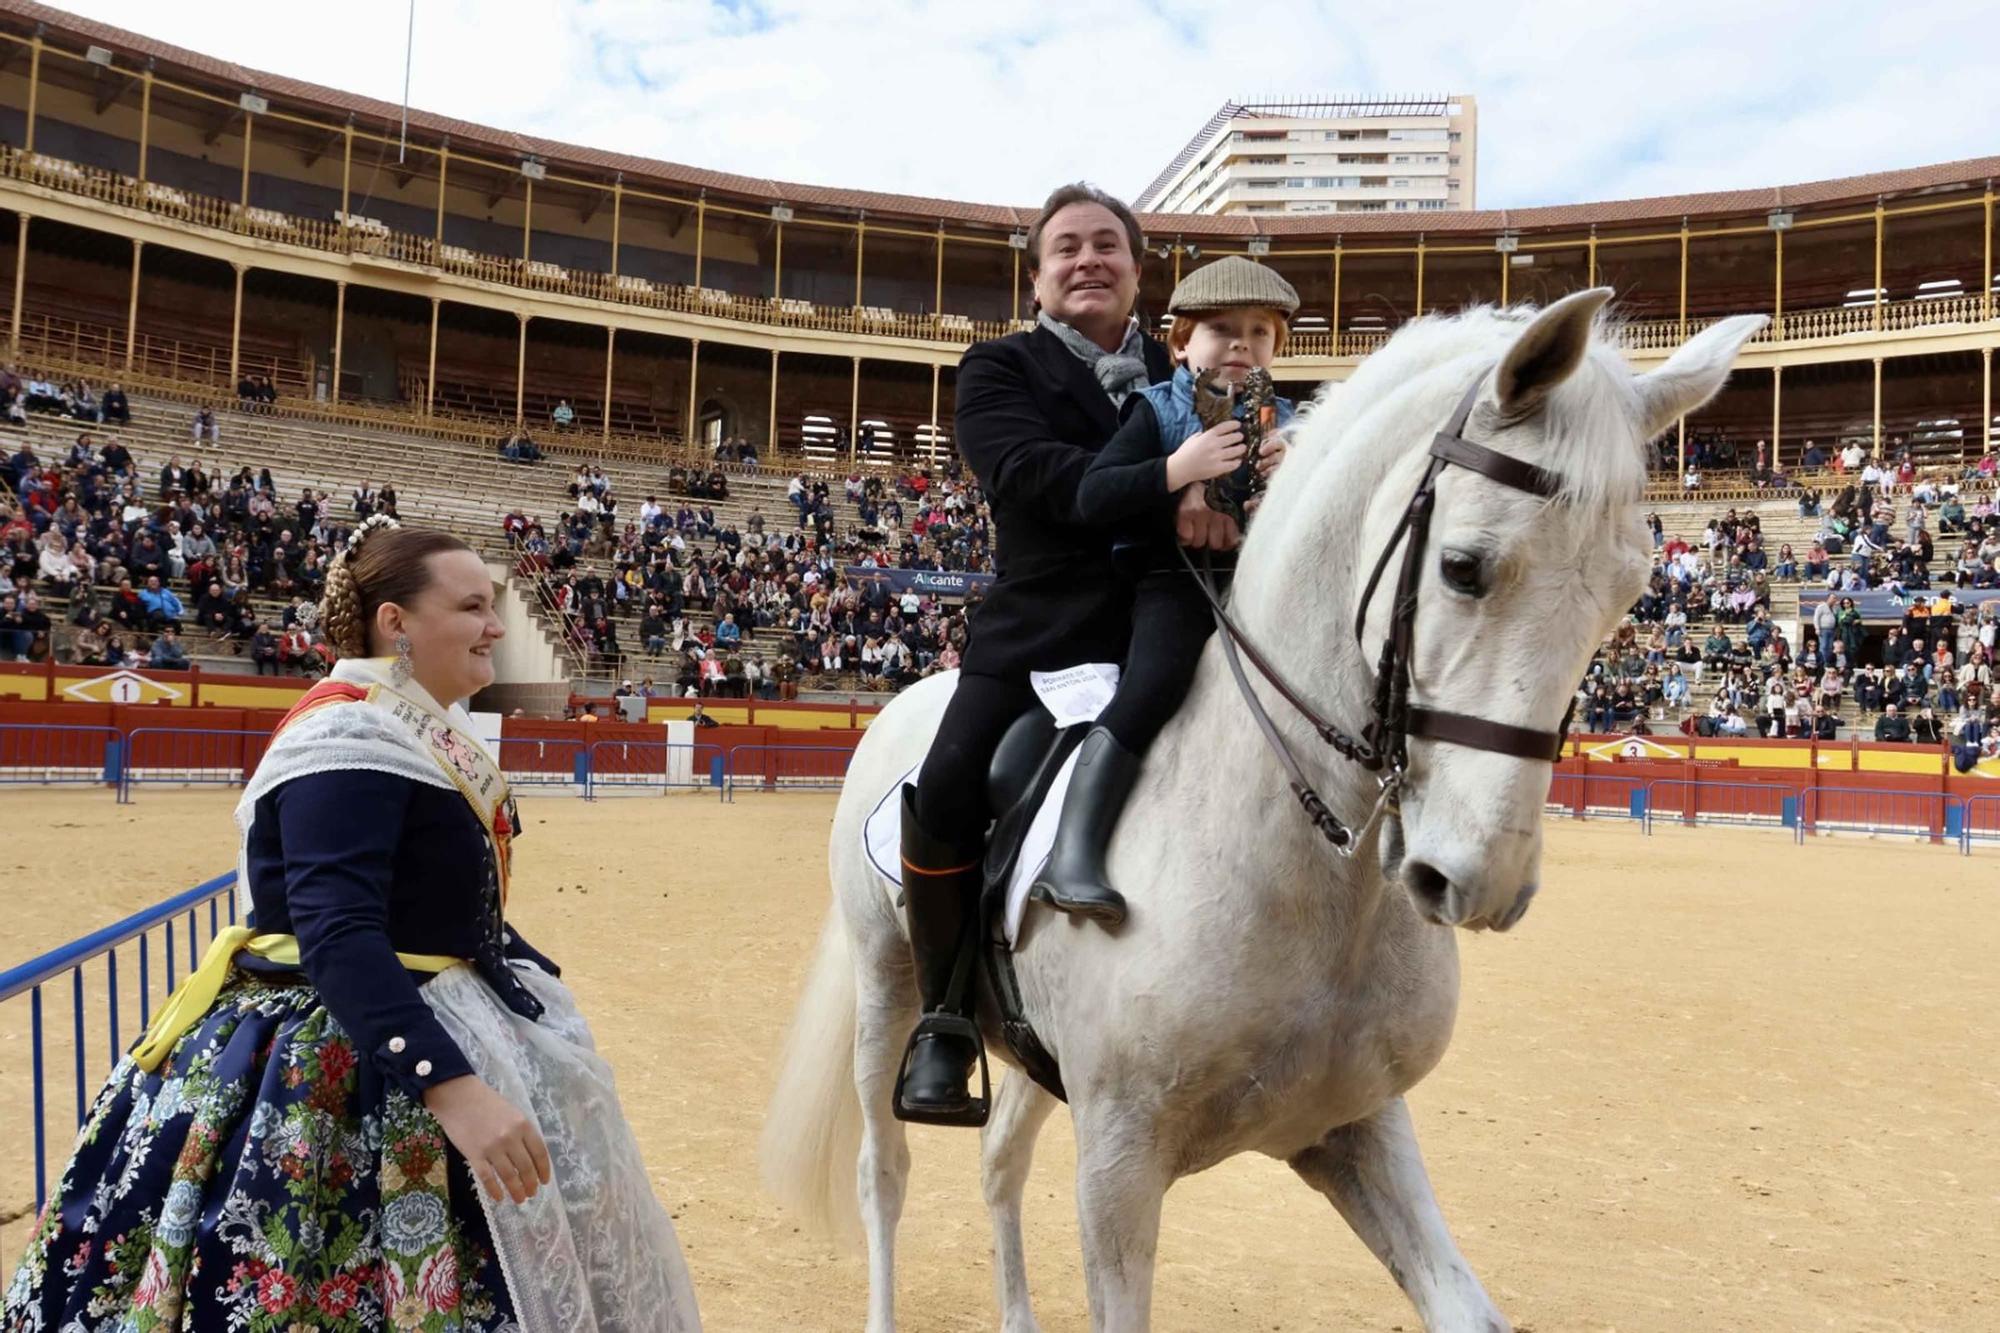 El Porrate de San Antón de Alicante culmina con la bendición de animales y llena de vida la Plaza de Toros